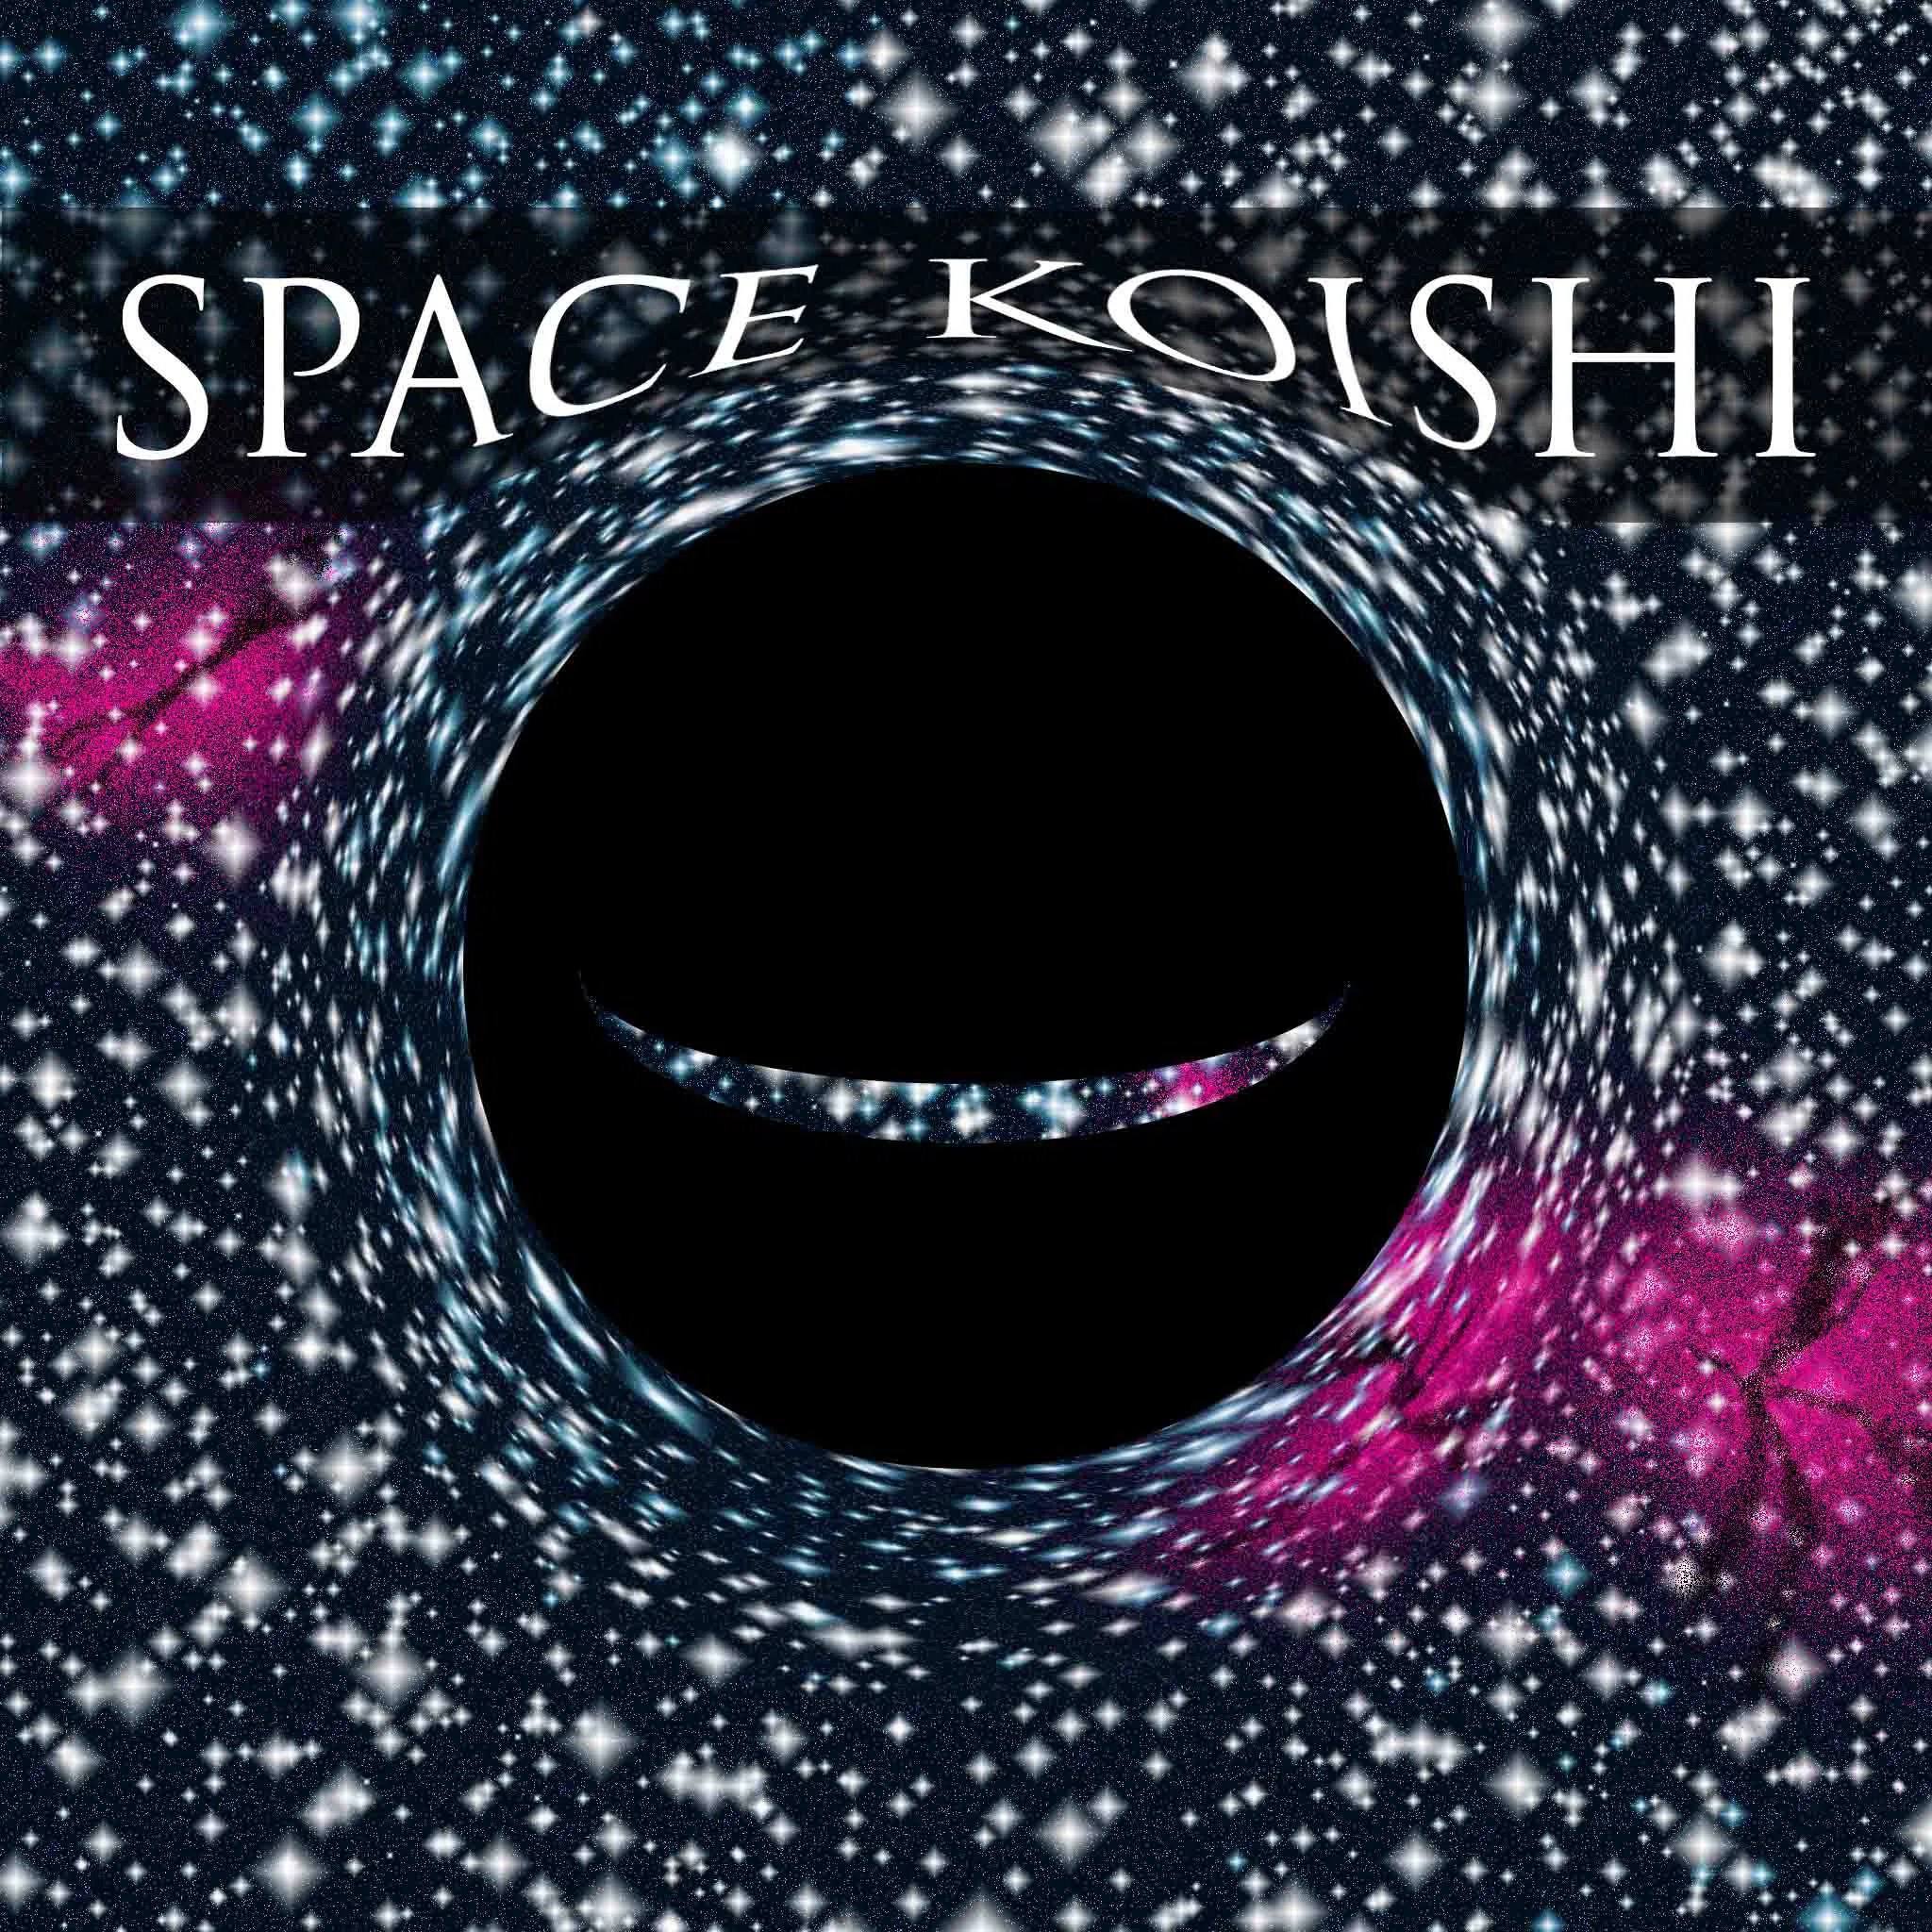 SPACE KOISHI